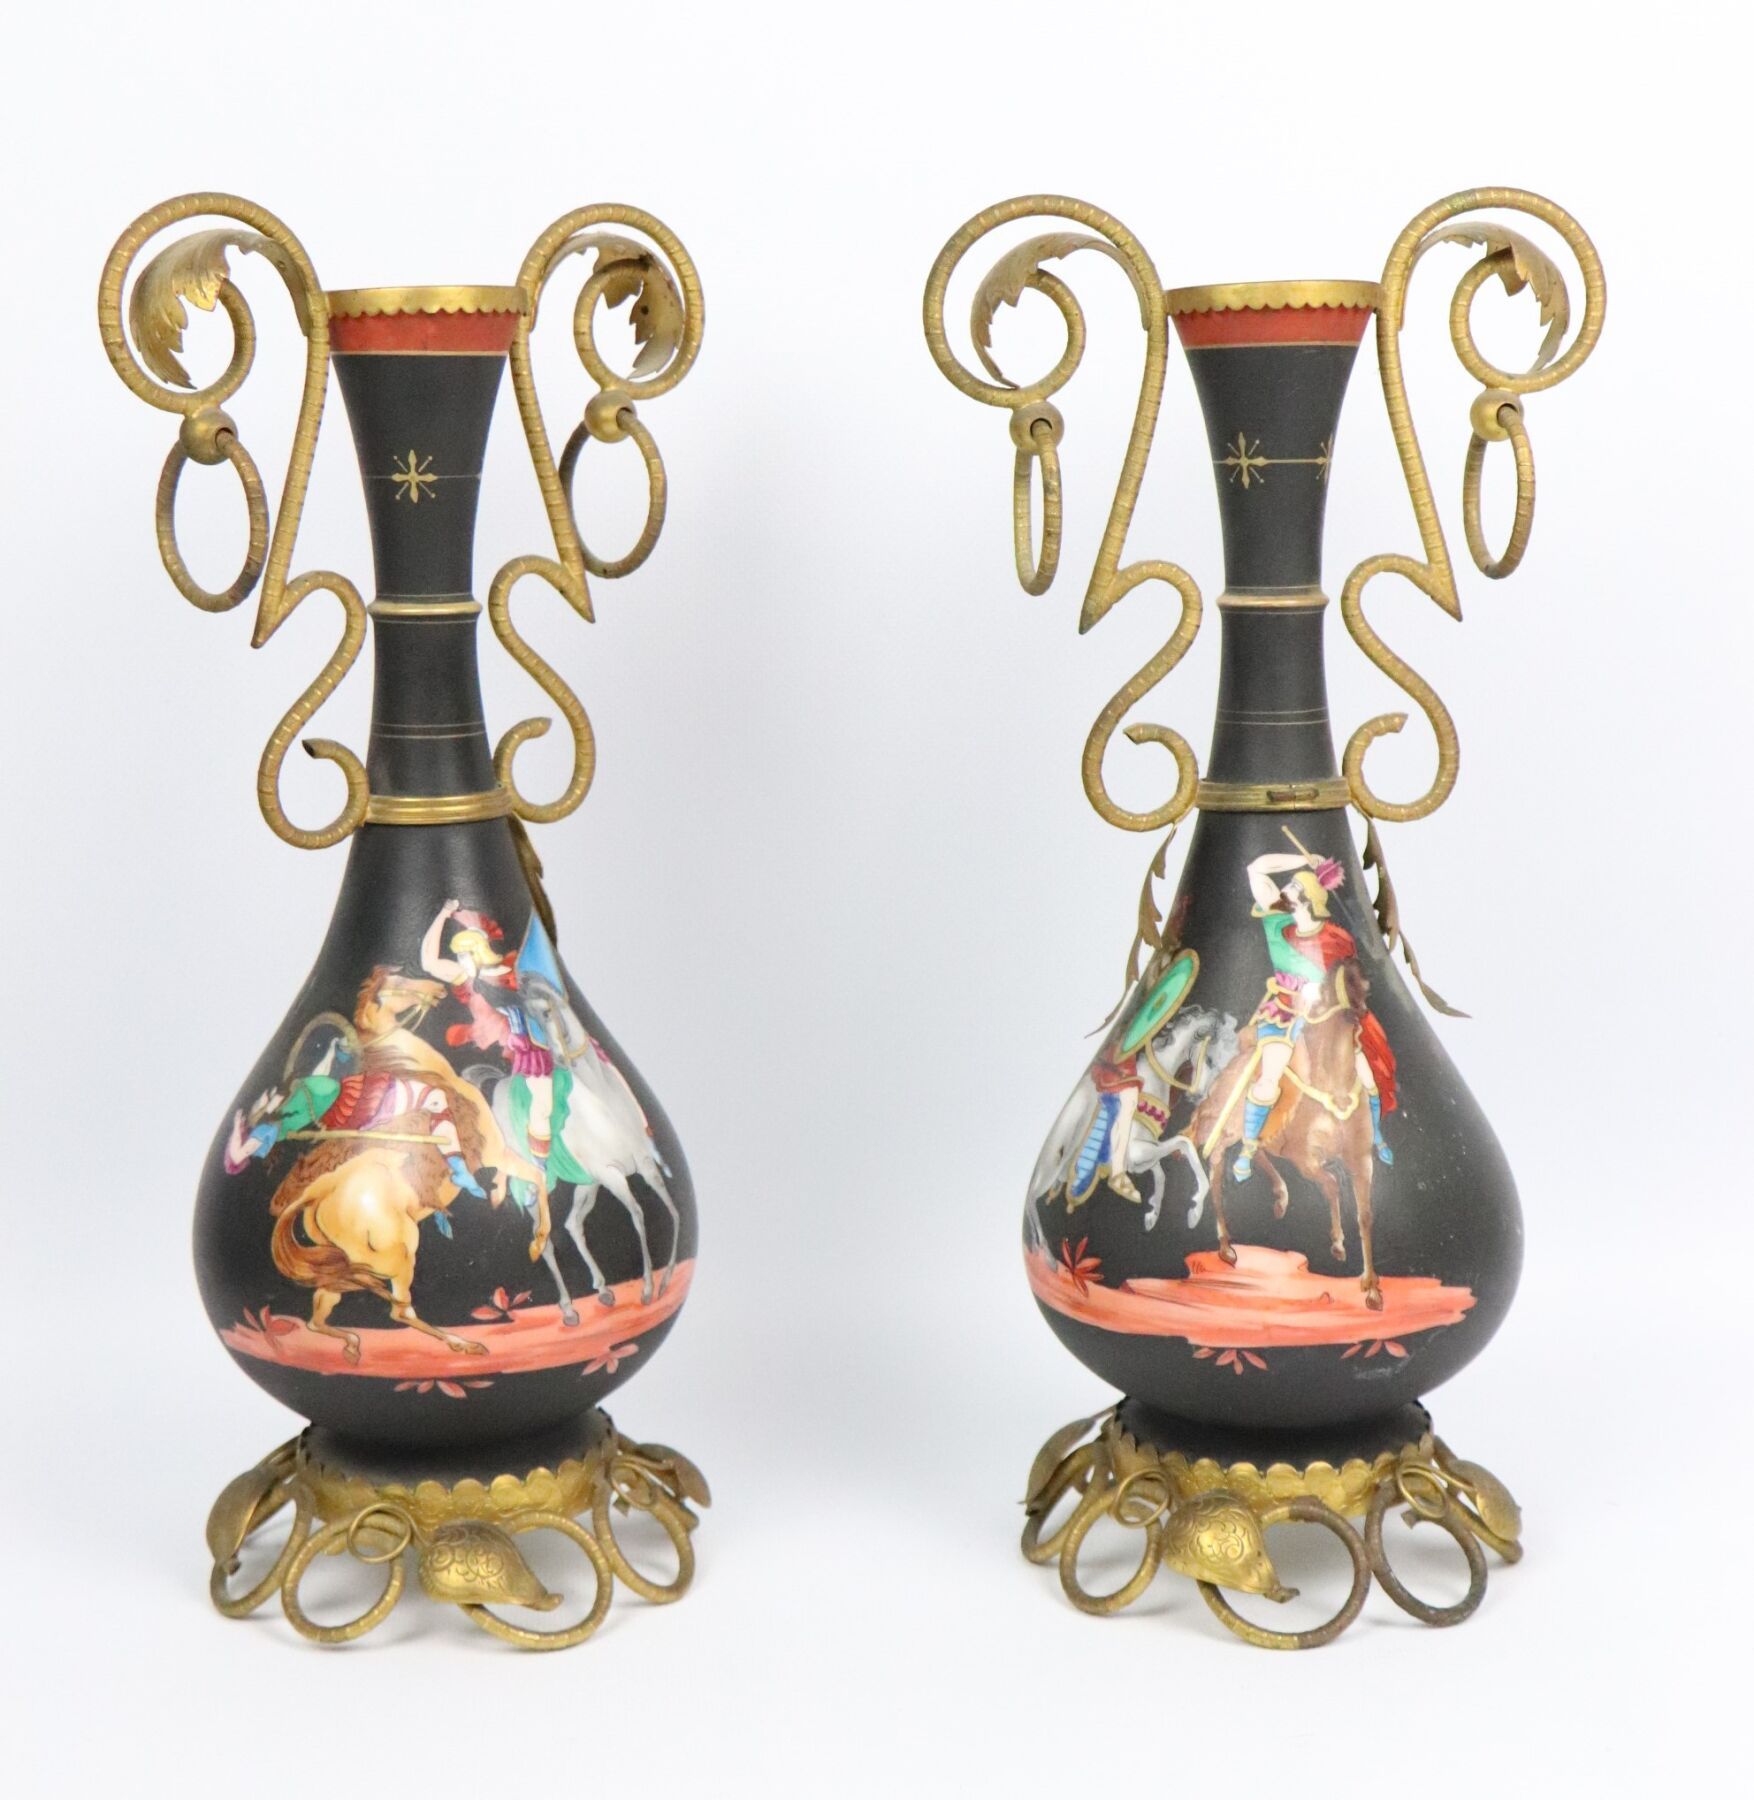 Null 巴黎.
一对黑底栏杆形瓷瓶，上面有罗马战士的多色装饰。 
鎏金的黄铜支架上装饰着叶子和卷轴。
拿破仑三世时期。
高_32厘米，瓷器缺失，其中一个花瓶的&hellip;